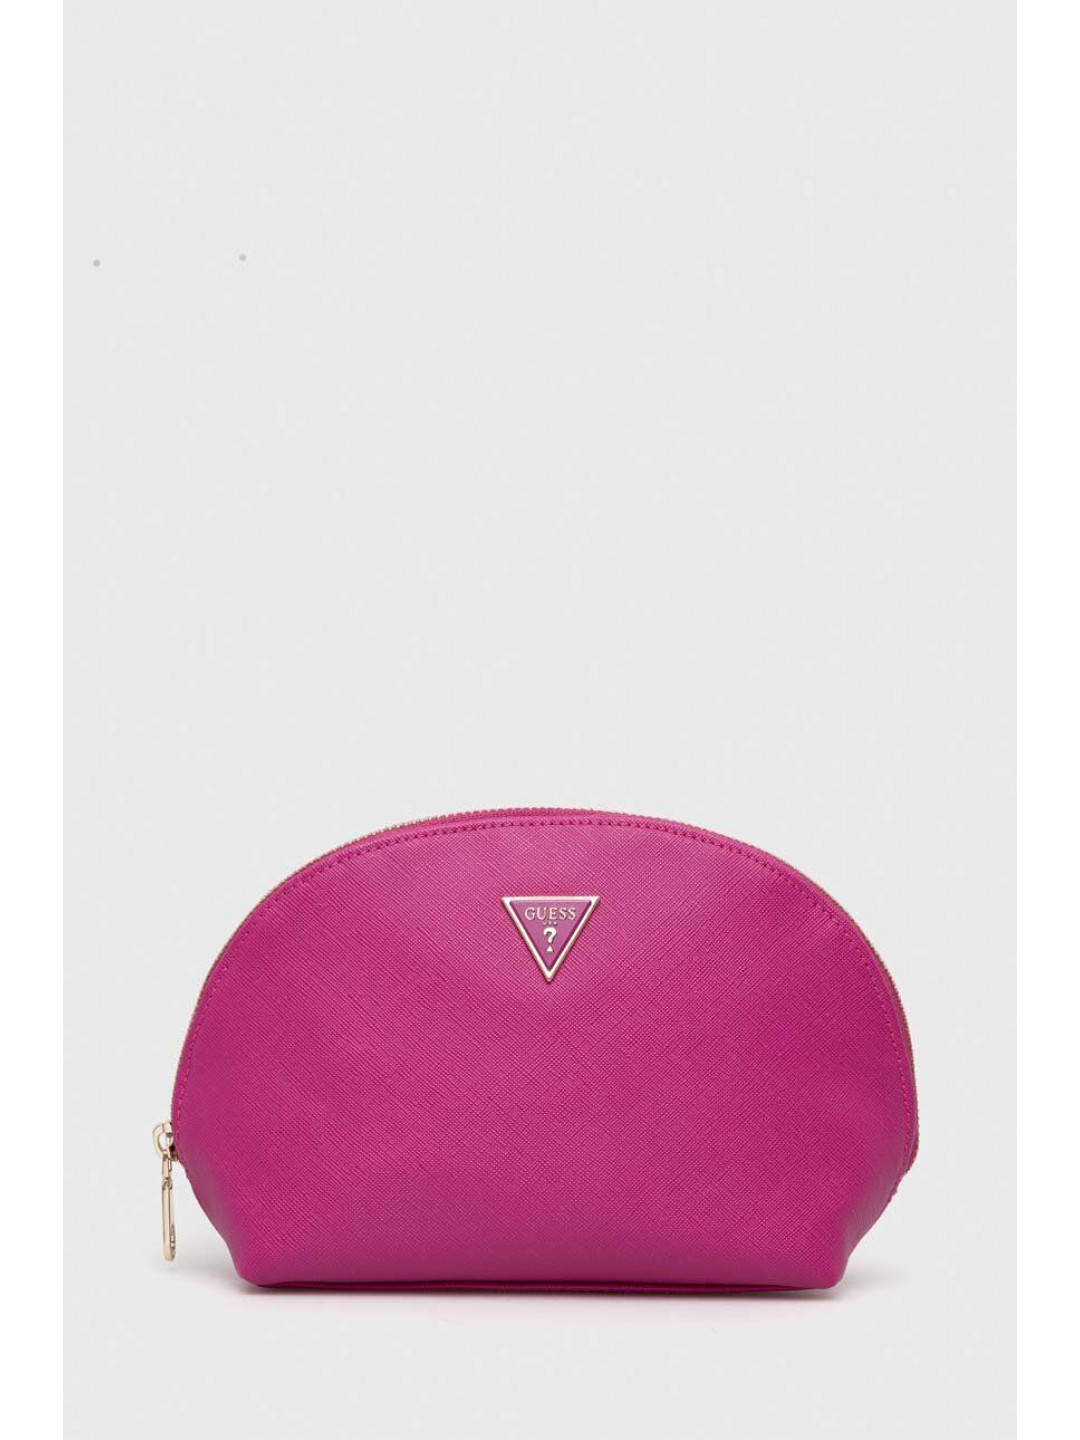 Kosmetická taška Guess DOME růžová barva PW1574 P3370